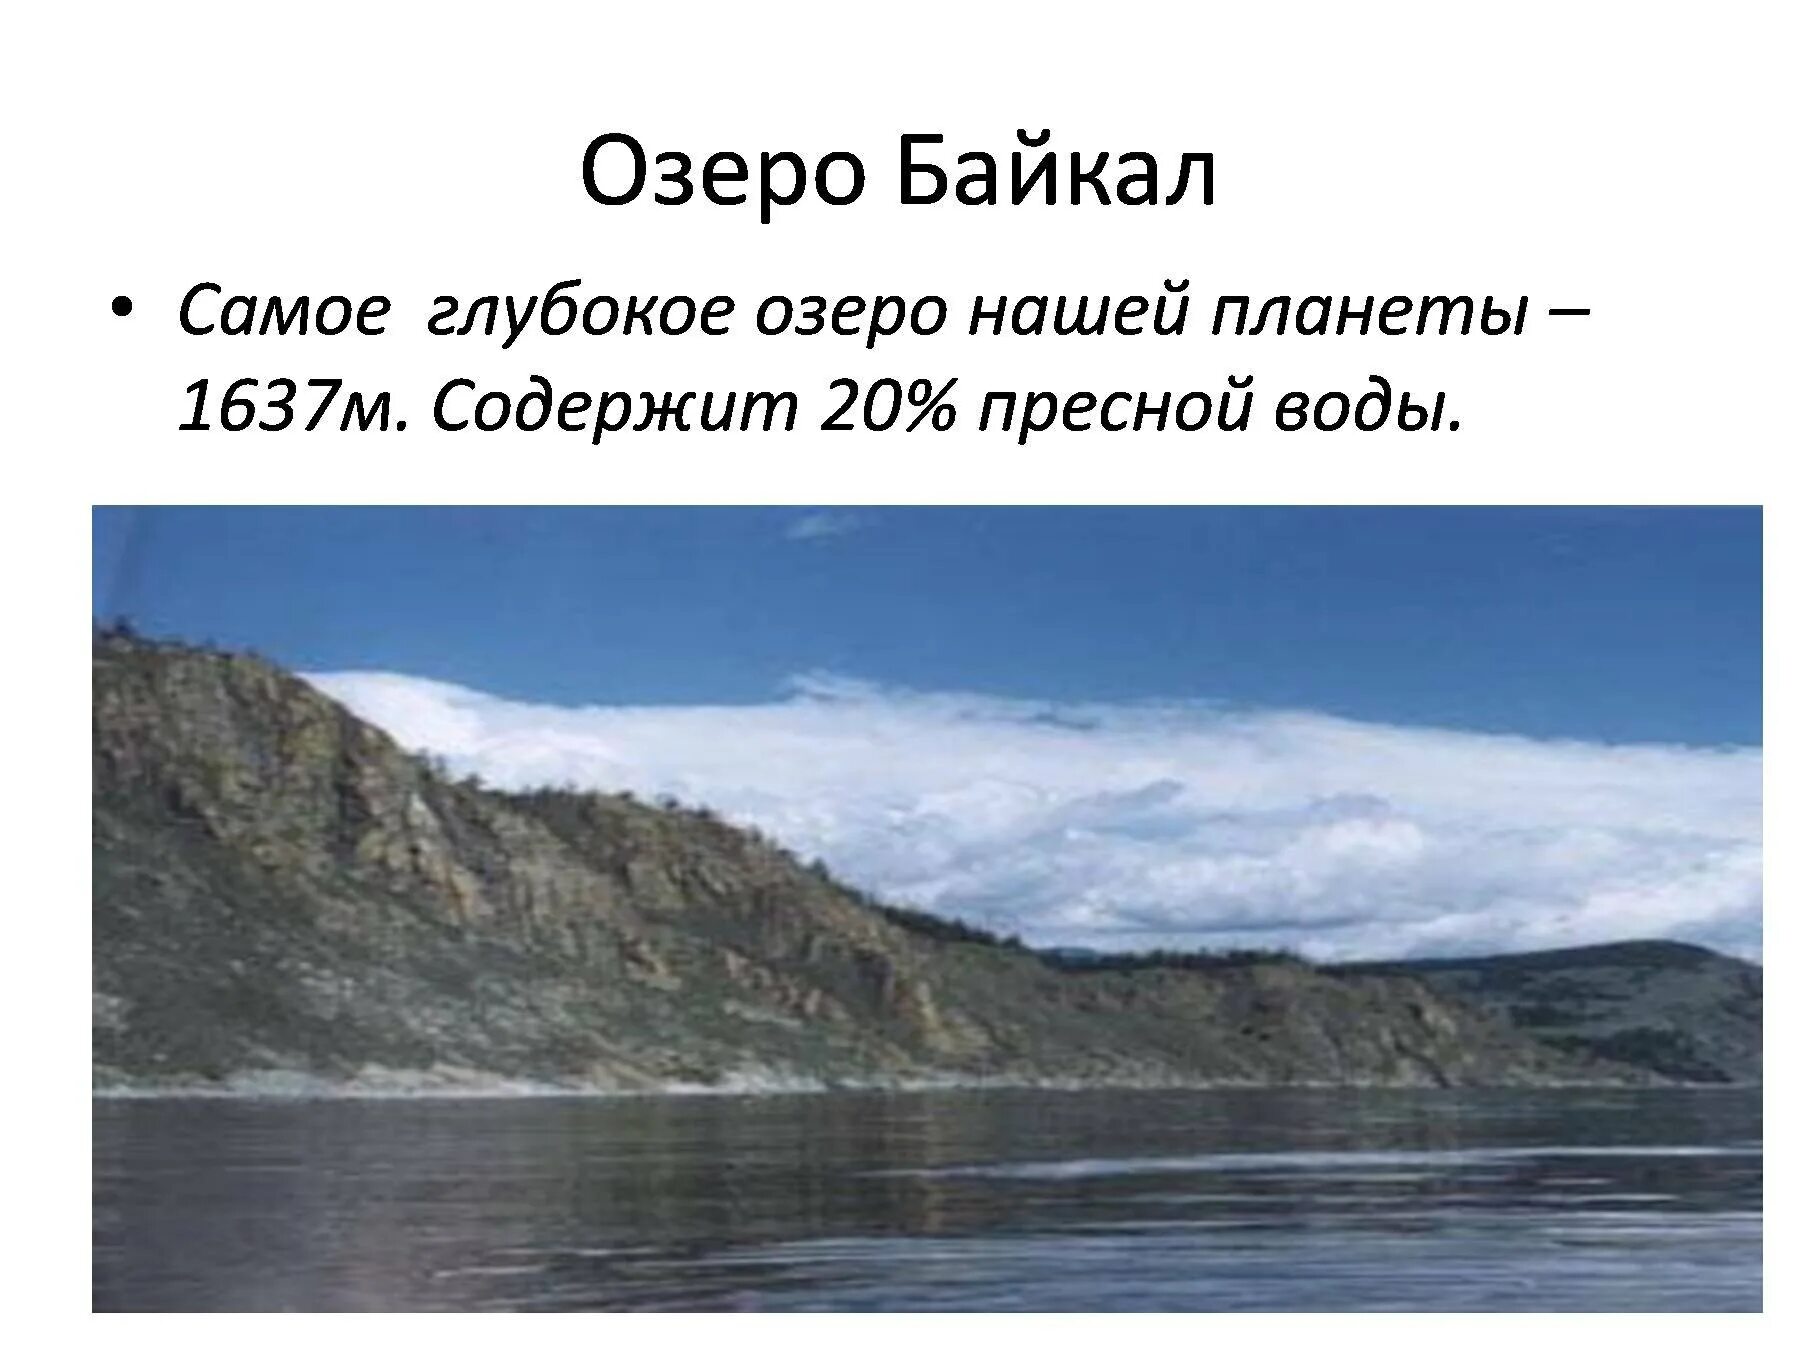 Самое глубокое озеро нашей планеты. Байкал самое глубокое. Диктант озеро Байкал. Самое глубокое озеро диктант Байкал глубочайшее озеро.